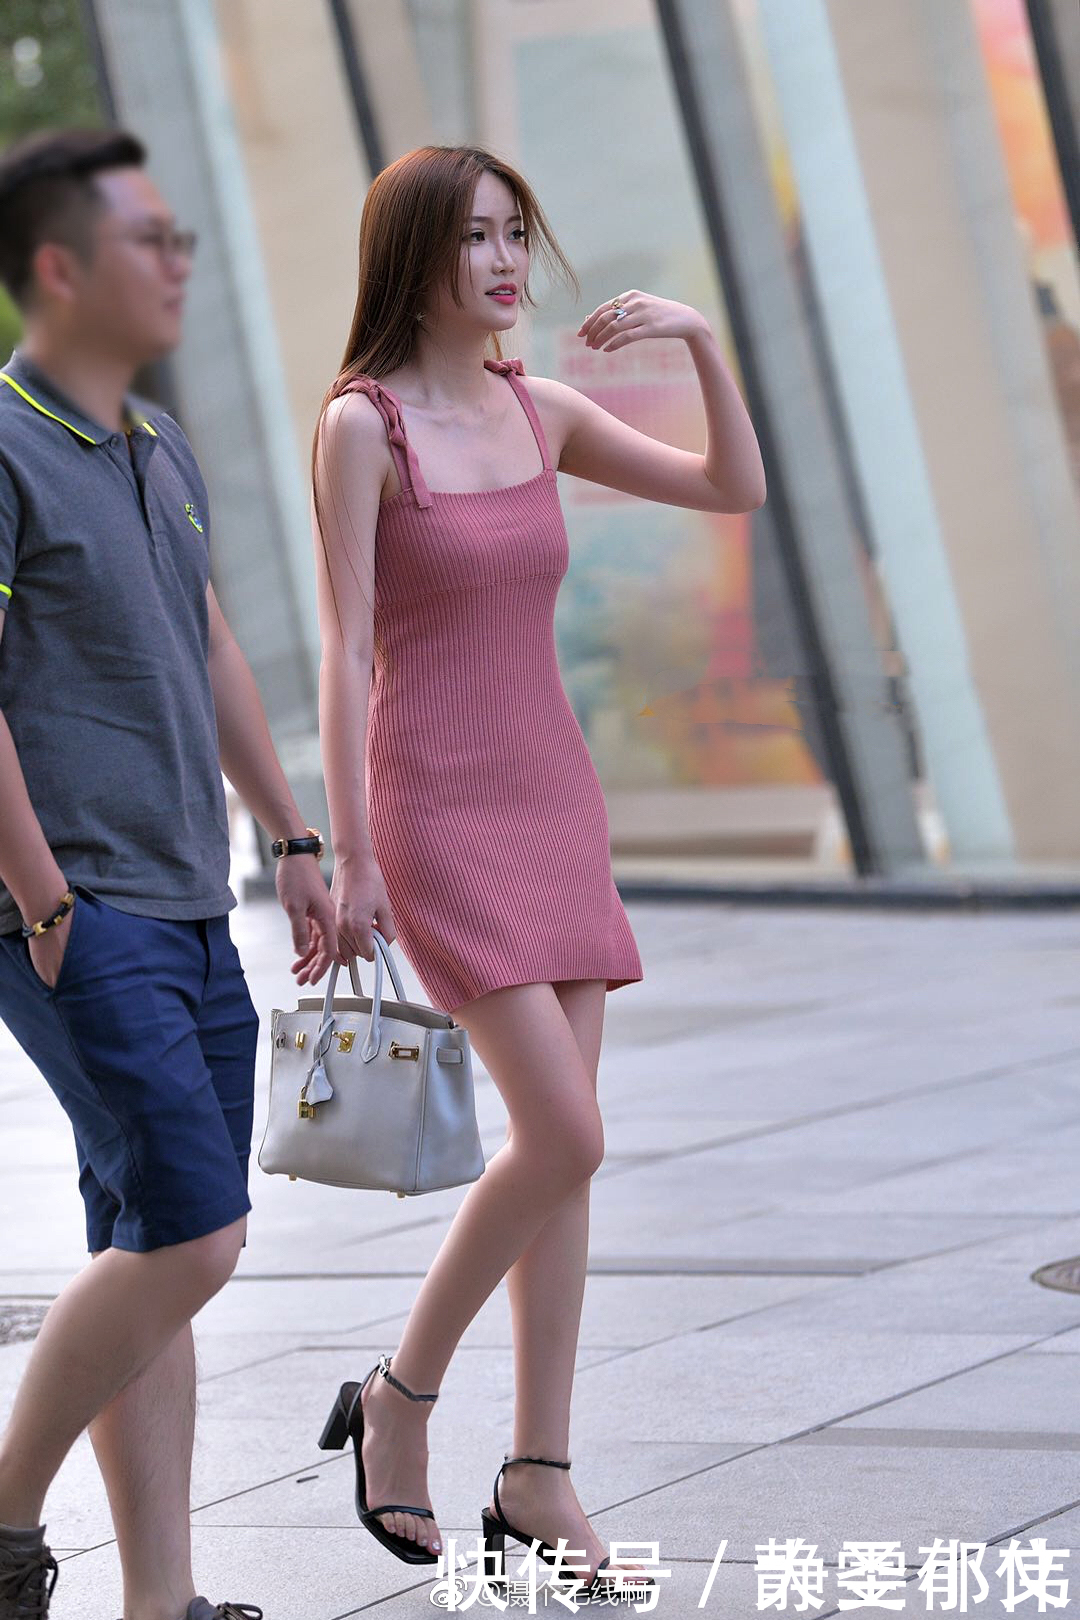 中国美女笑容“安庆火车站找服务”街拍图文 - 大全